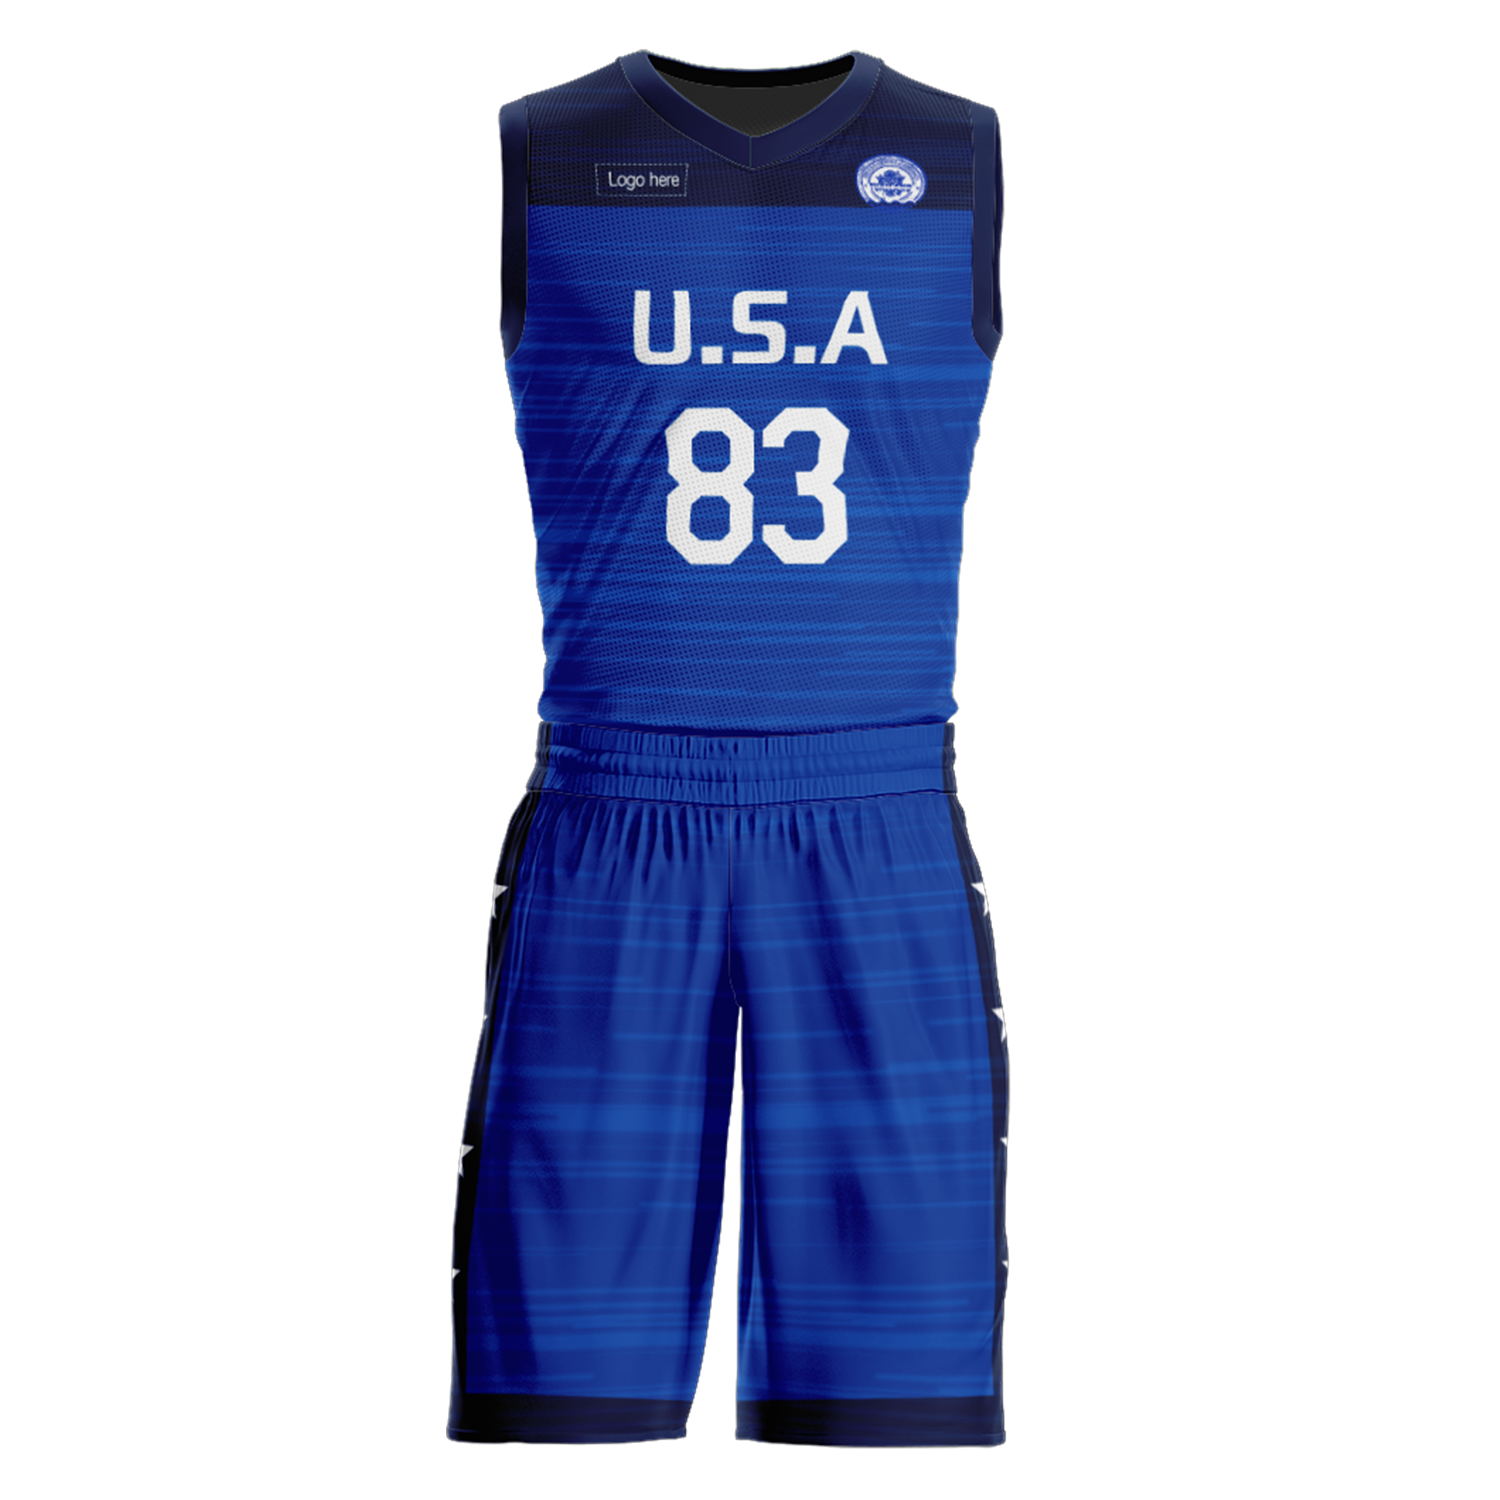 Trajes de baloncesto personalizados del equipo de EE. UU.